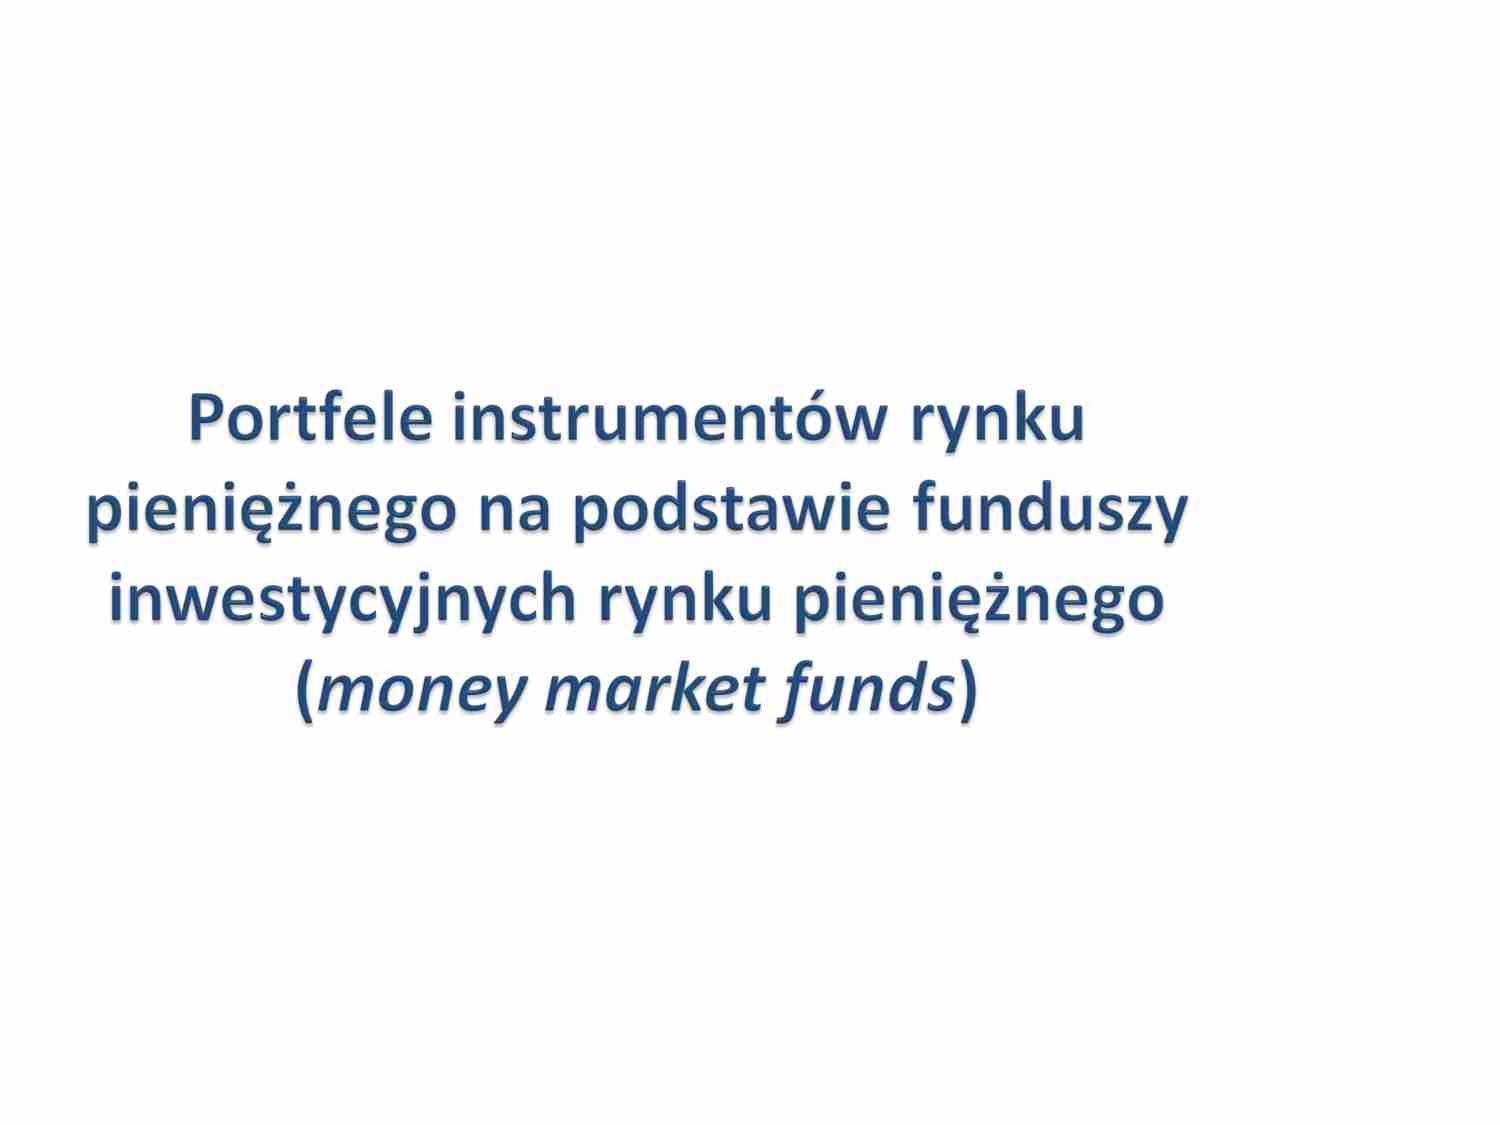 Portfele instrumentów rynku pieniężnego na podstawie funduszy inwestycyjnych rynku pieniężnego - strona 1